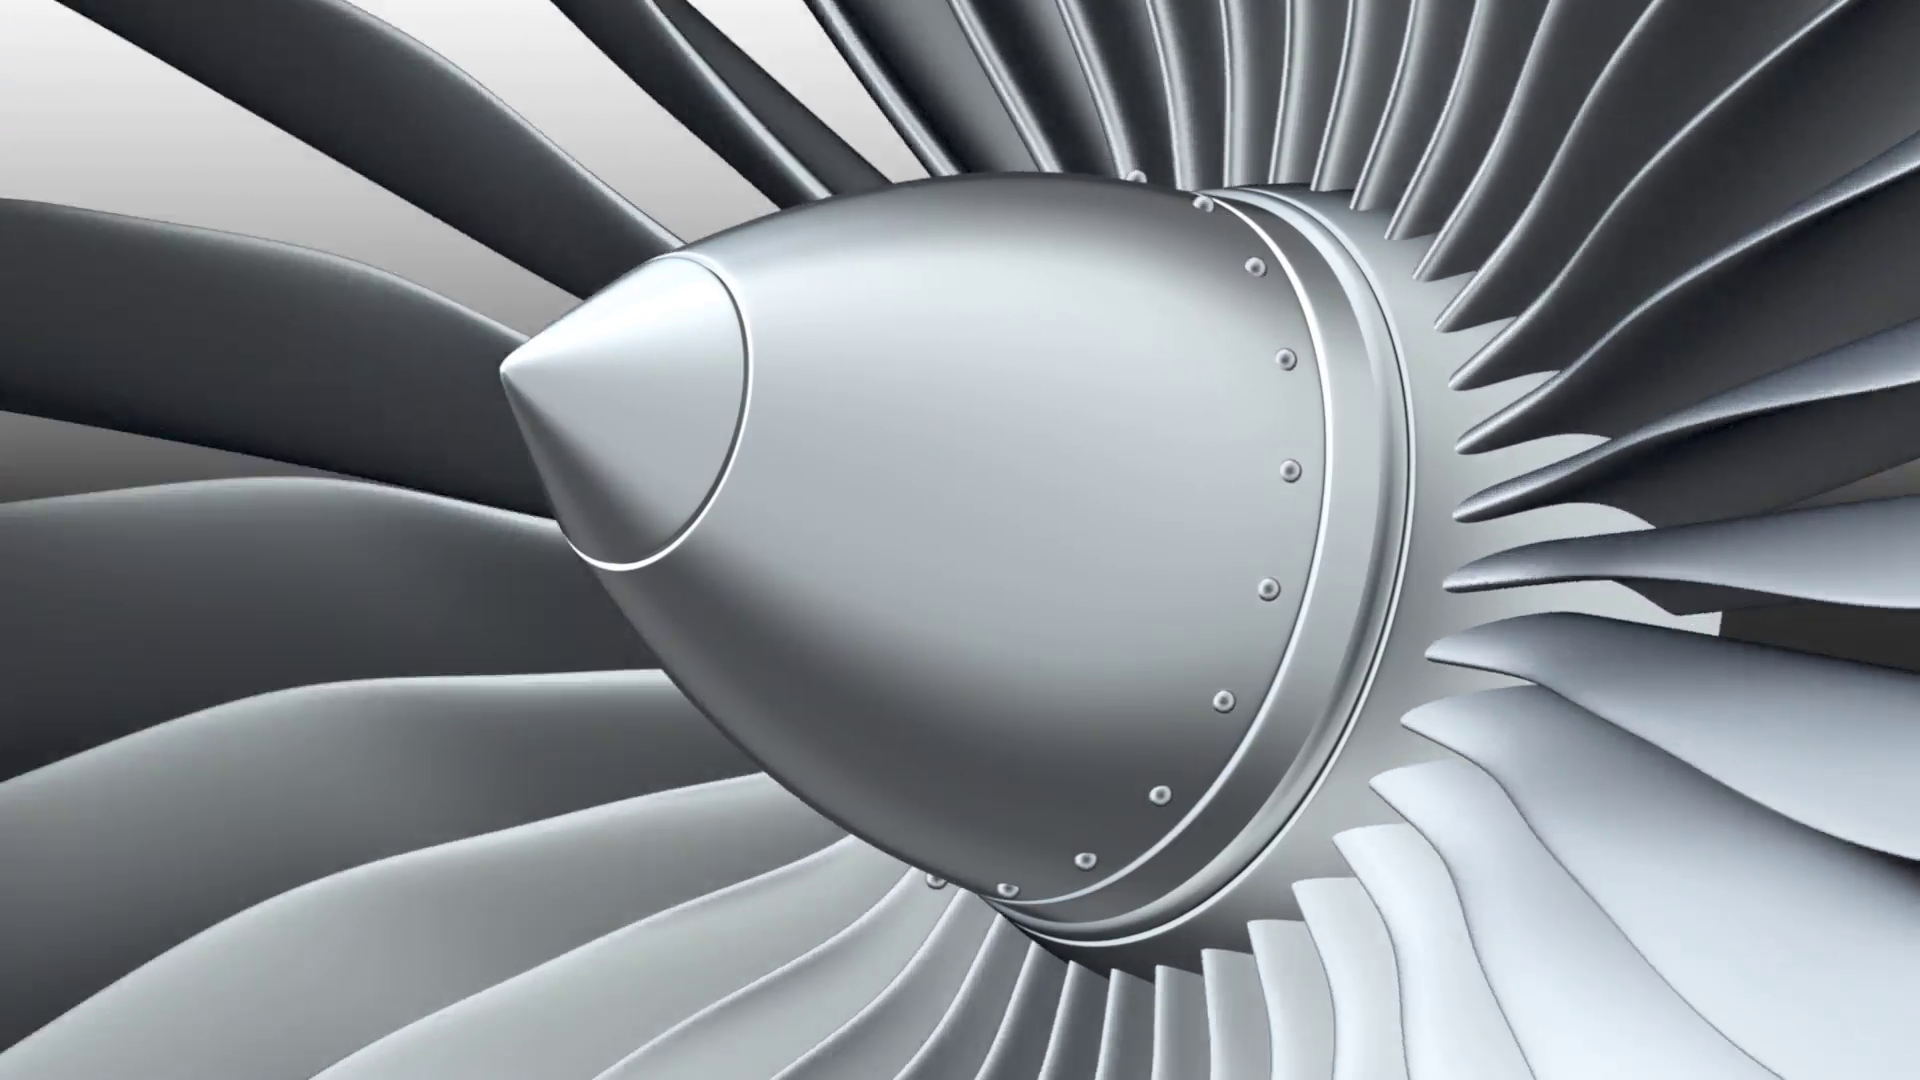 Jet engine, turbine blades of airplane, 3d animation, seamless loop ...